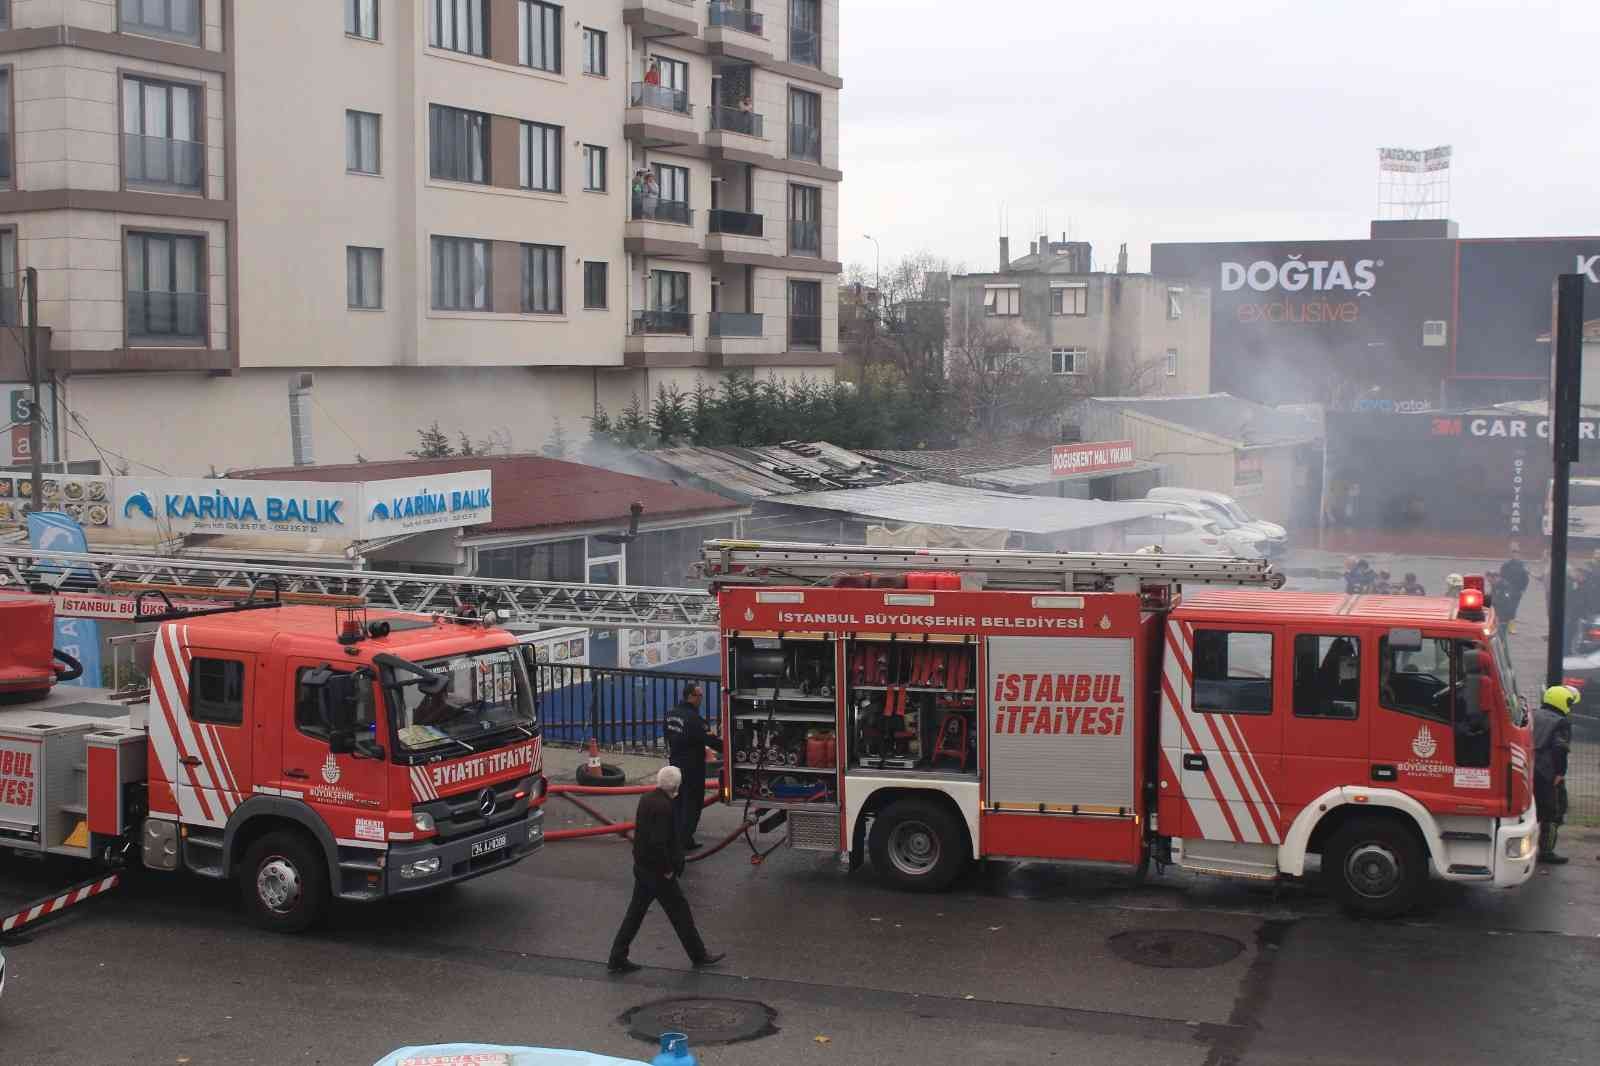 Maltepe’de halı yıkama atölyesinde korkutan yangın #istanbul